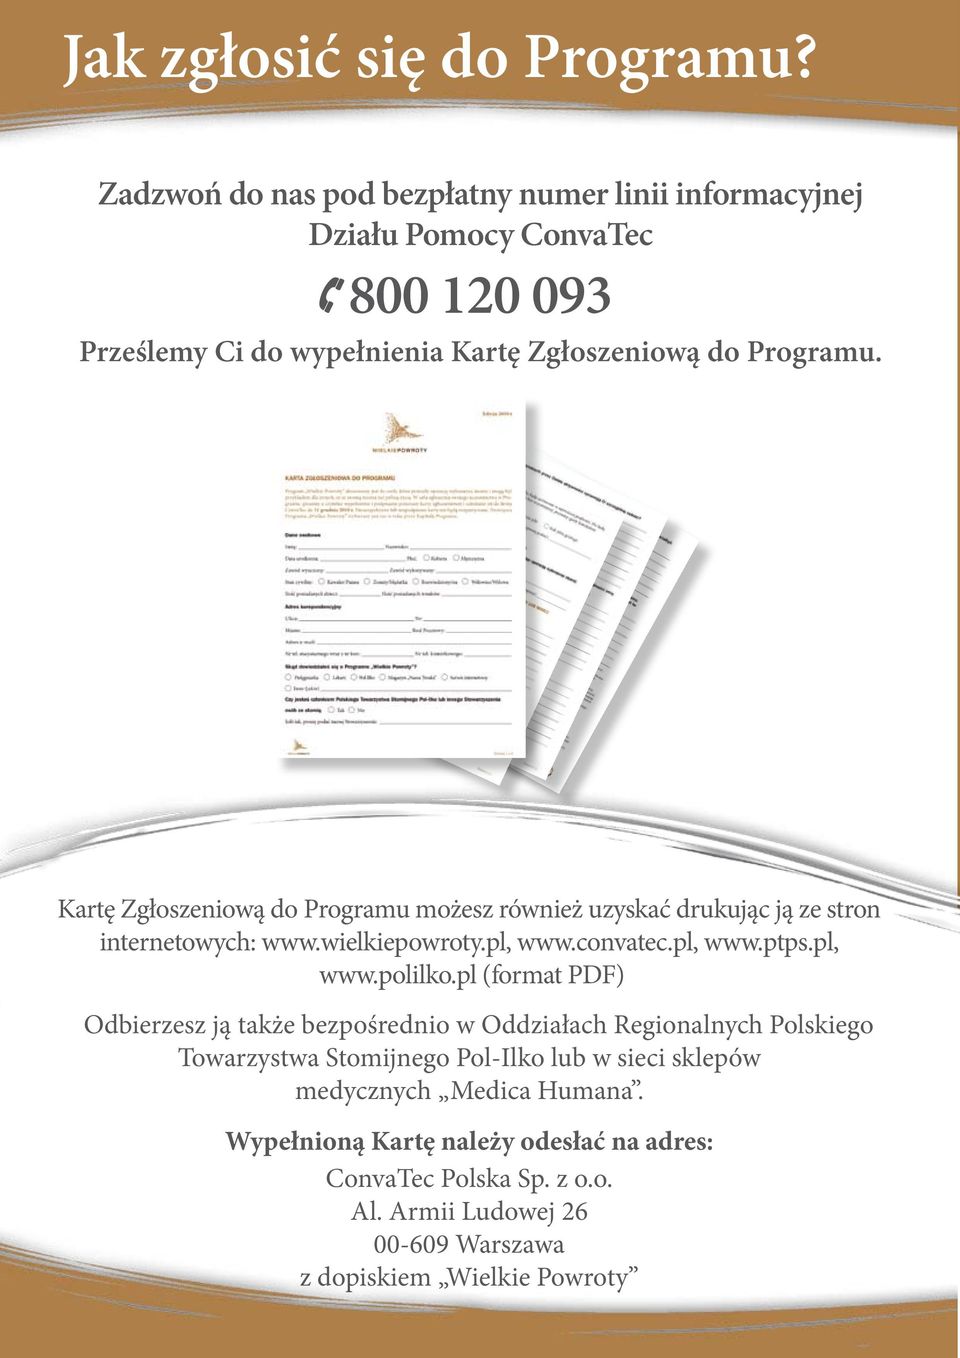 Kartę Zgłoszeniową do Programu możesz również uzyskać drukując ją ze stron internetowych: www.wielkiepowroty.pl, www.convatec.pl, www.ptps.pl, www.polilko.